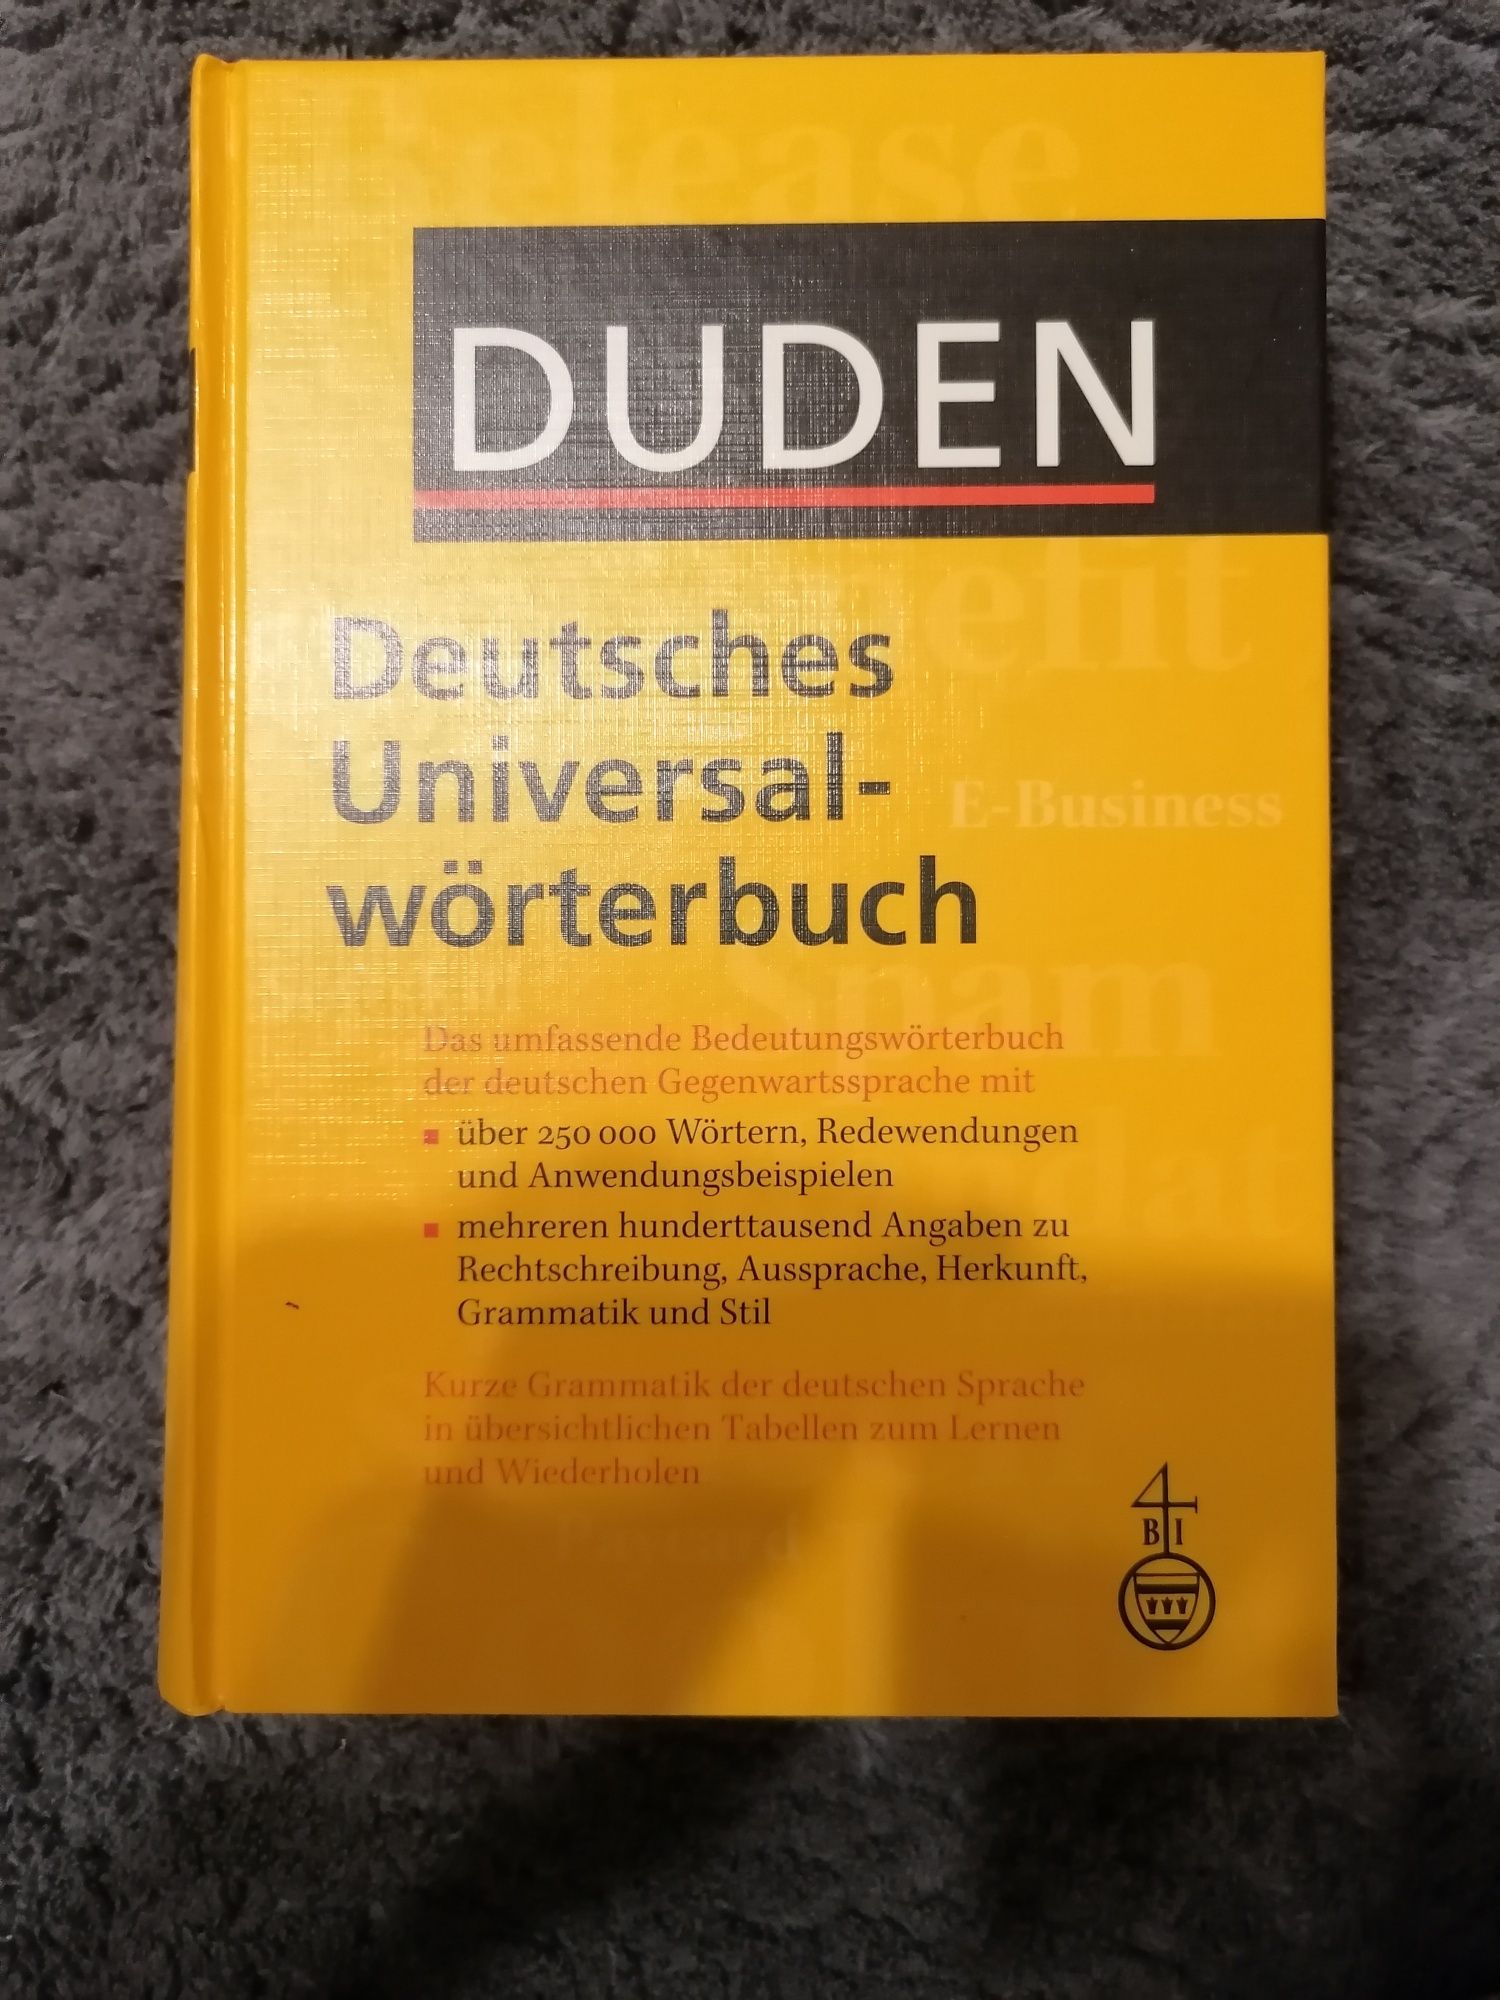 Słownik Duden Deutsches Uniwersalwörterbuch